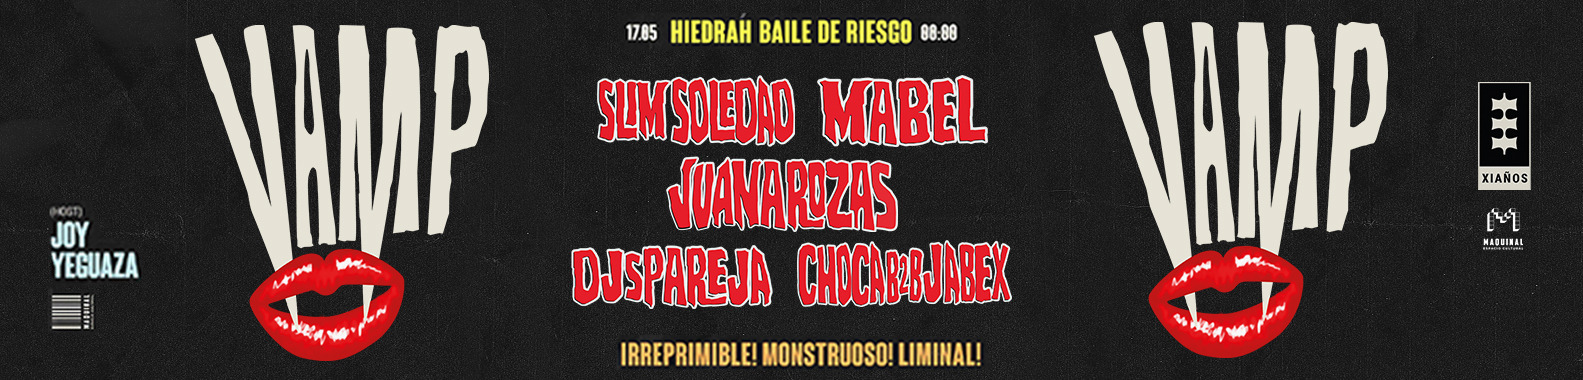 HIEDRAH BAILE DE RIESGO | VIERNES 17 DE MAYO | C/ DJS PAREJA, SLIM SOLEDAD, JUANA ROZAS Y + (+0)